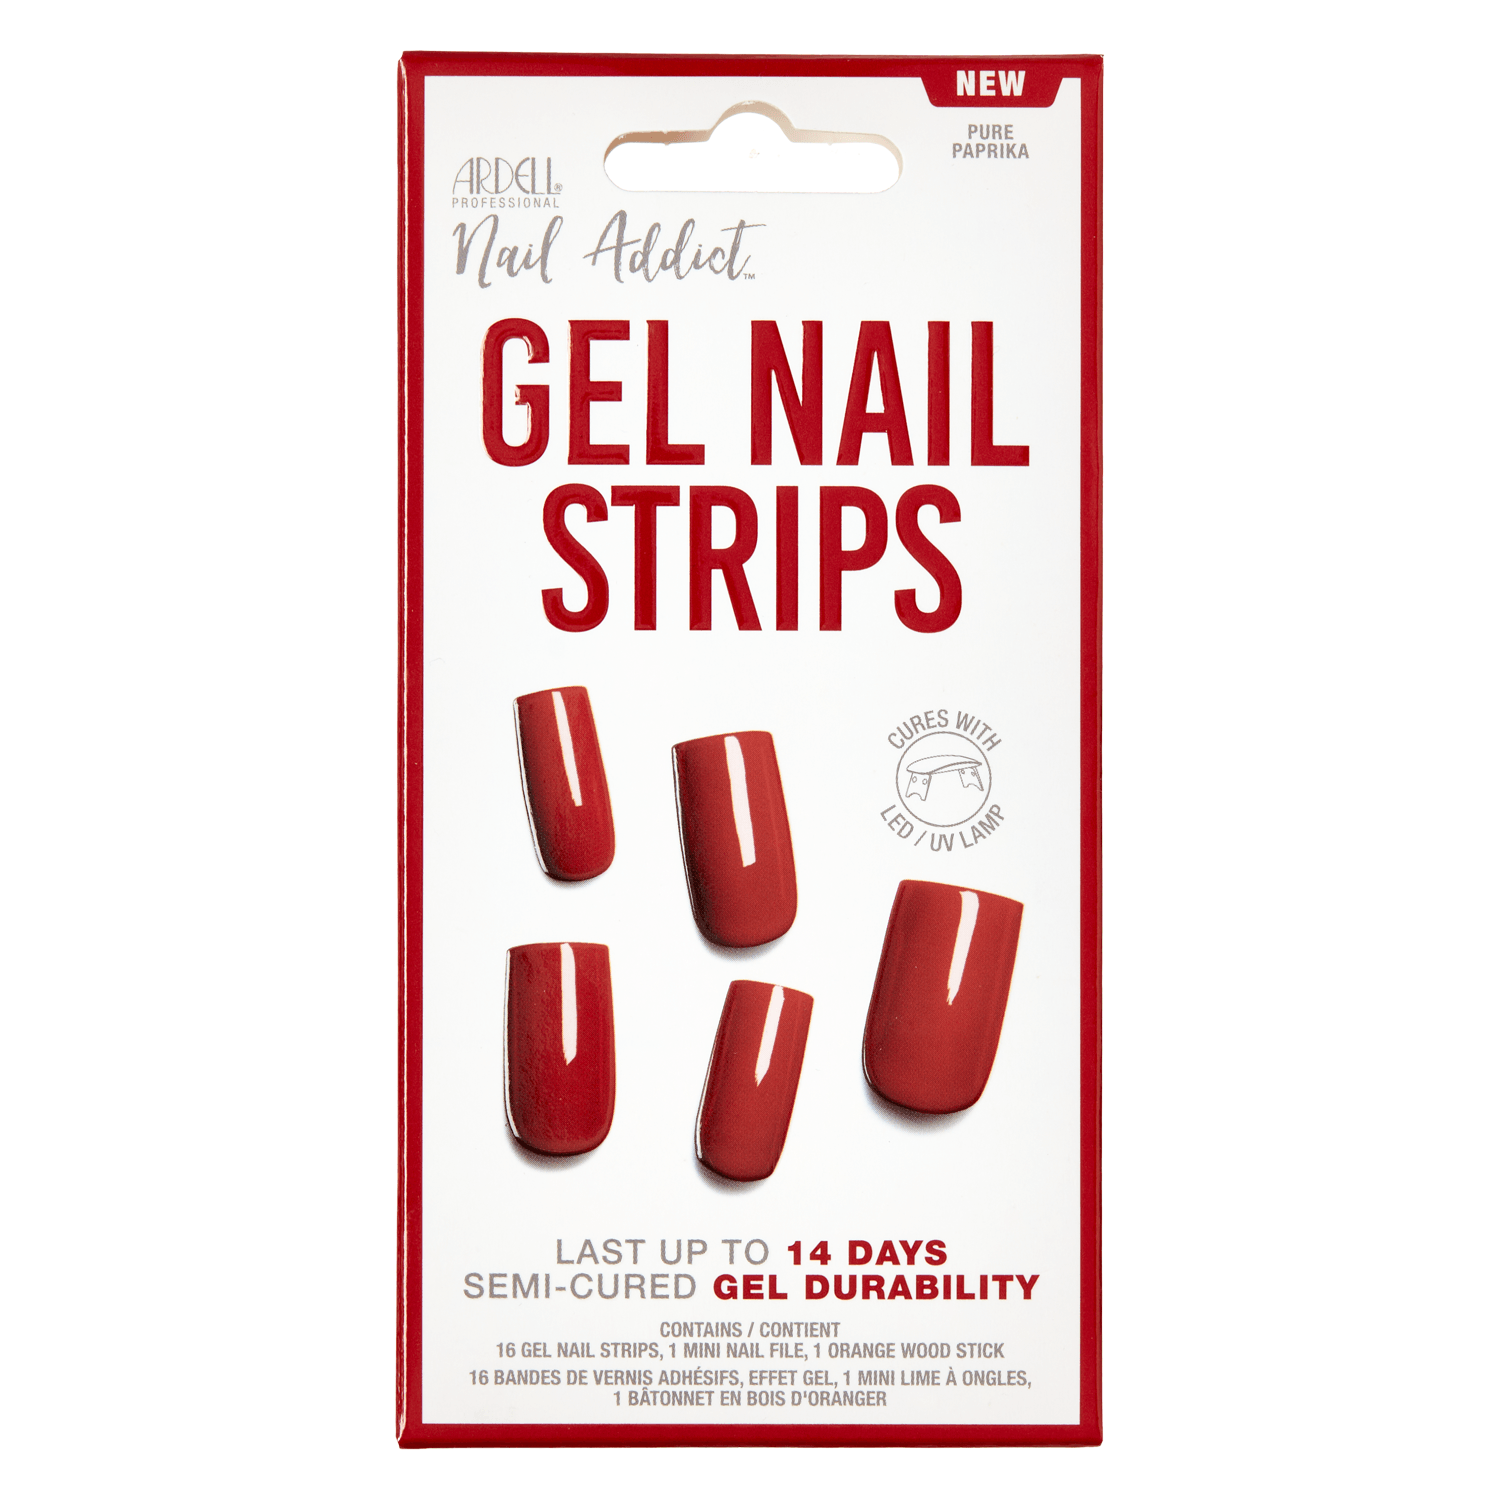 Produktbild von Nail Addict - Gel Nail Strips Pure Paprika